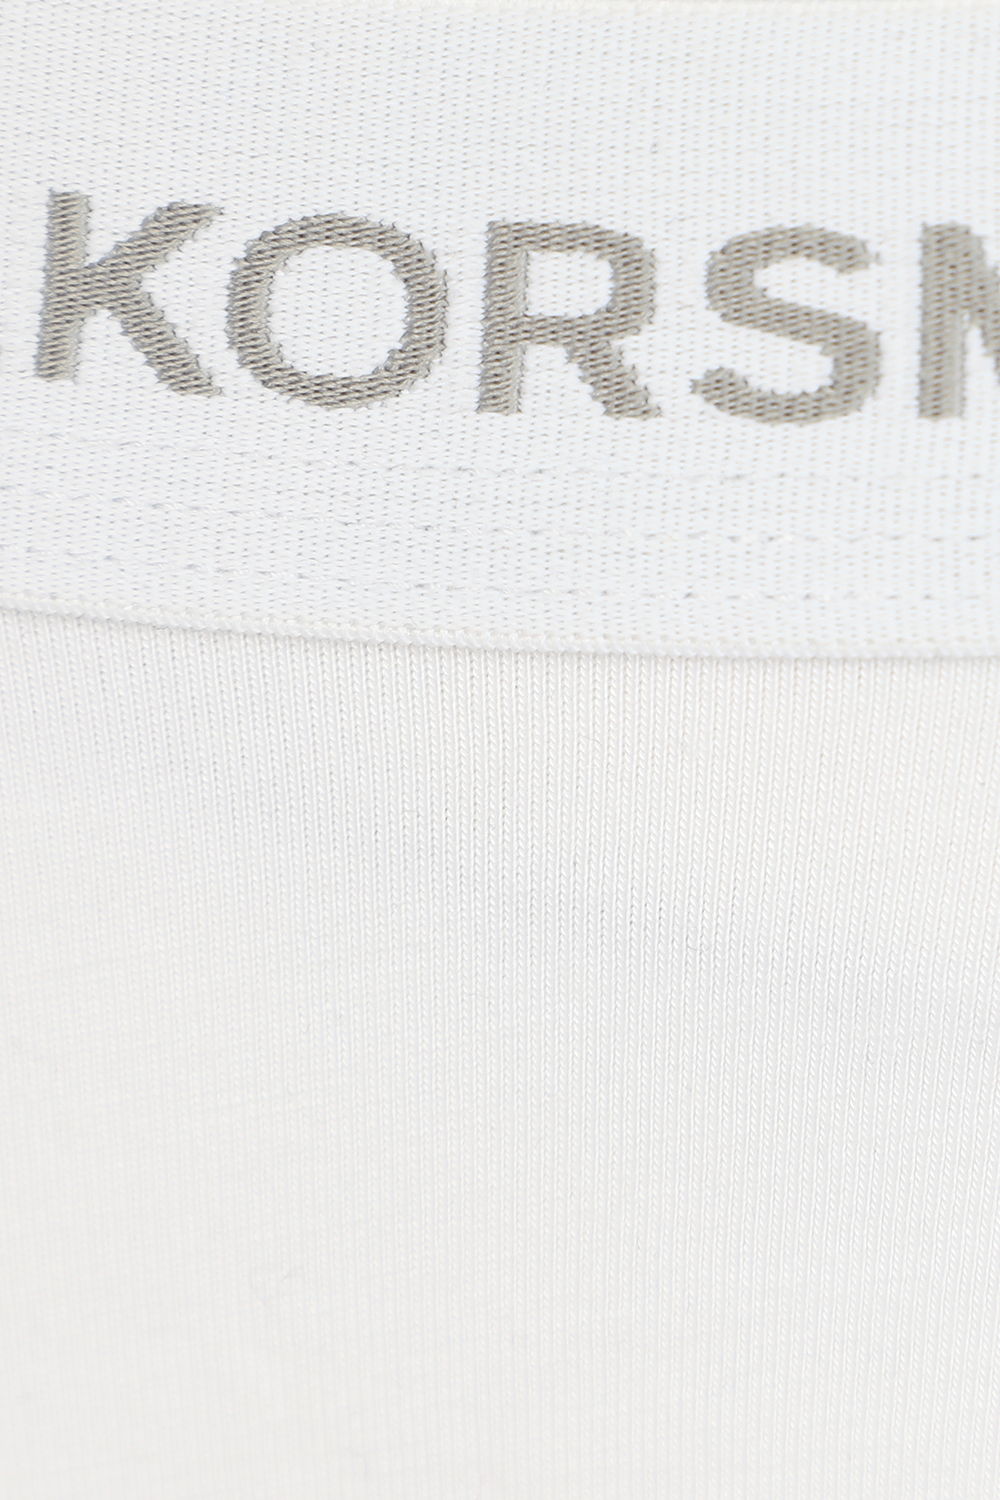 מארז שלישיית תחתונים בצבע לבן MICHAEL KORS